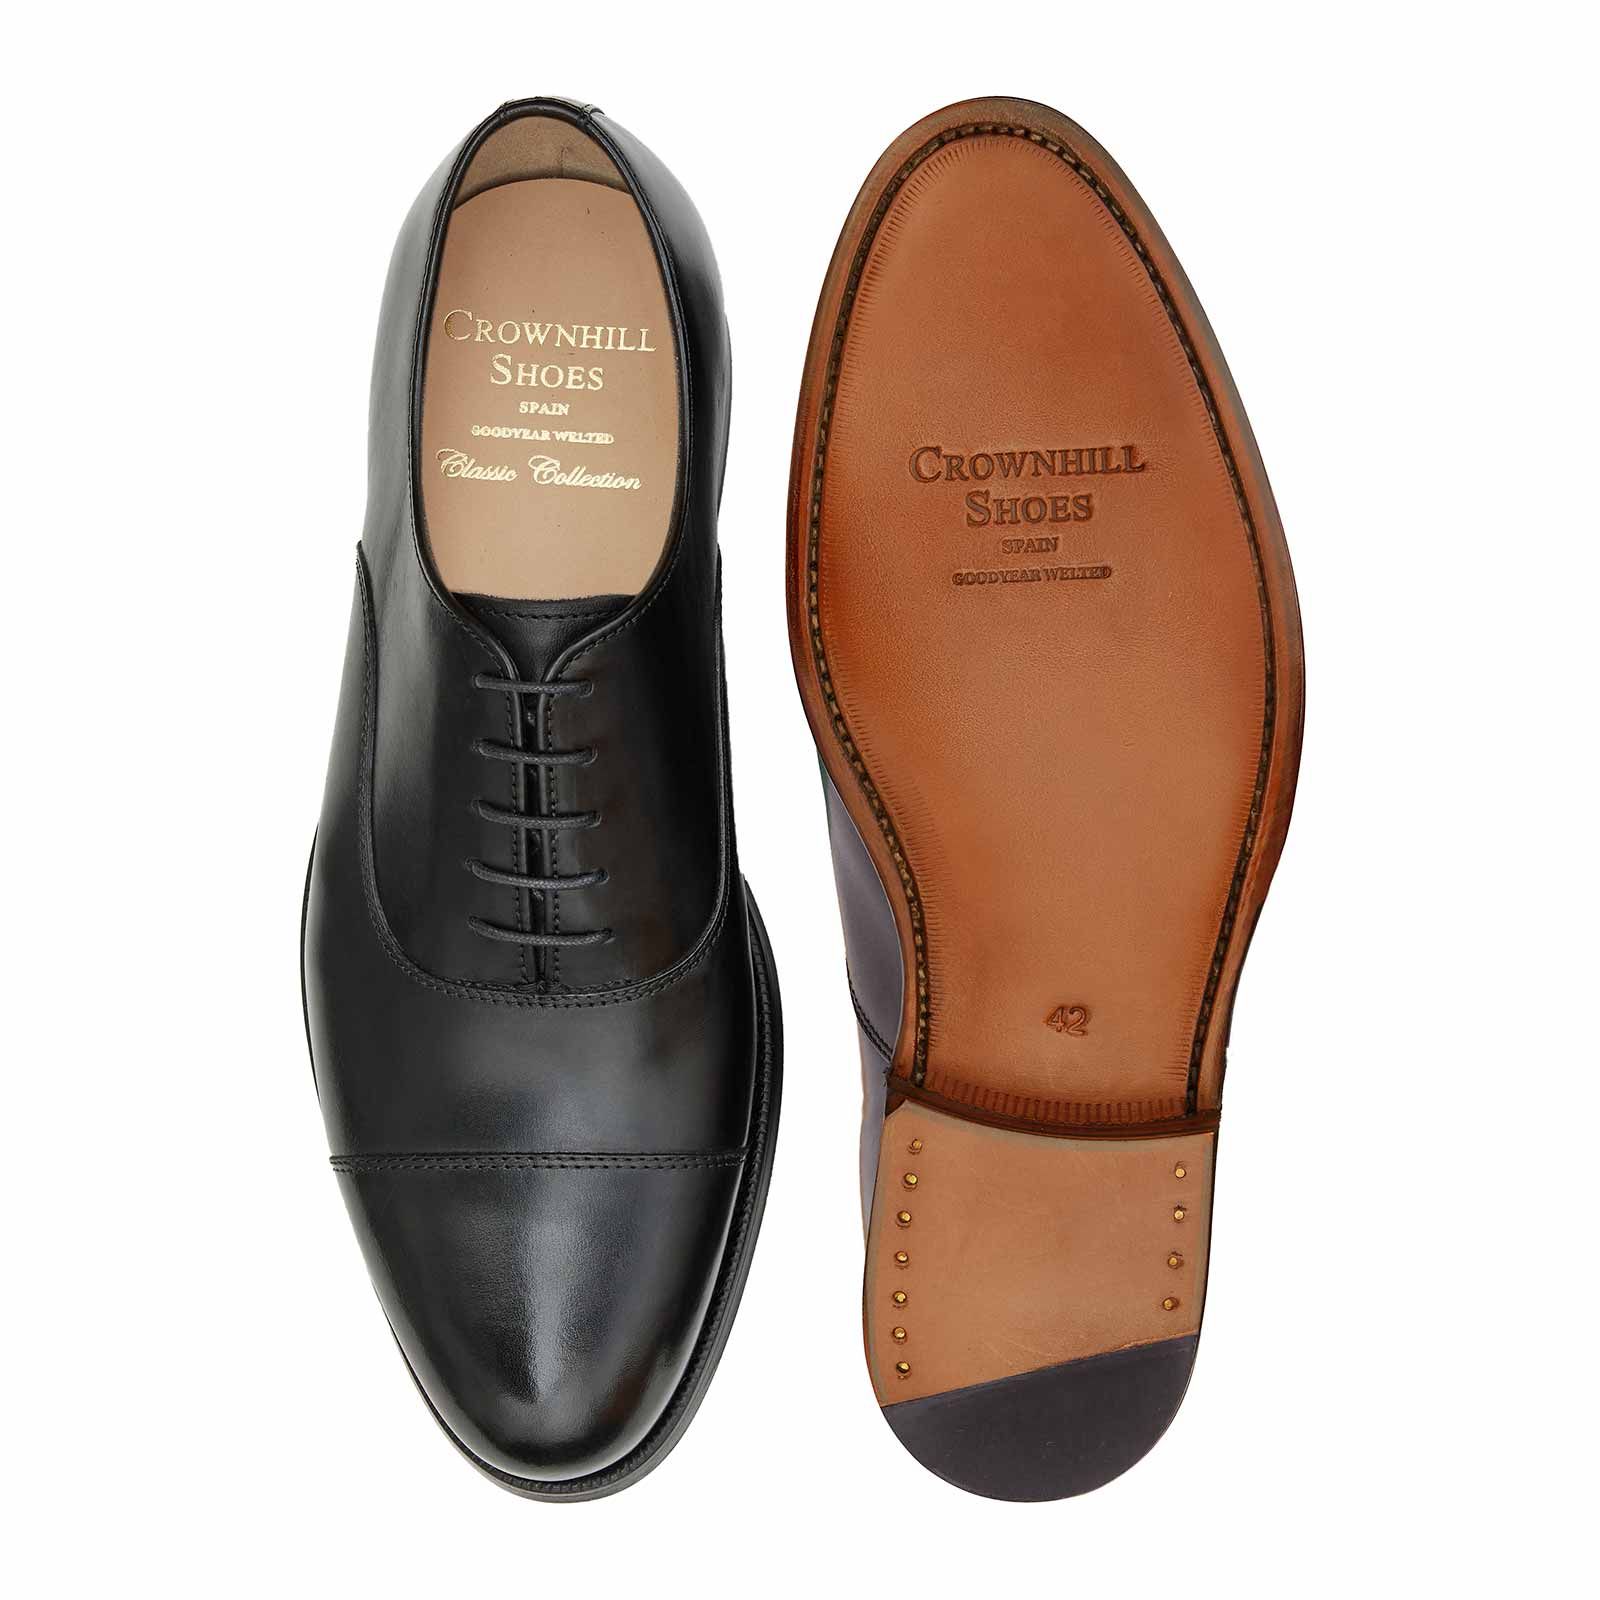 Nouveau pour Homme en Cuir Noir Formelle Chaussures Doublé Taille 6 7 8 9 10 11 12 livraison gratuite